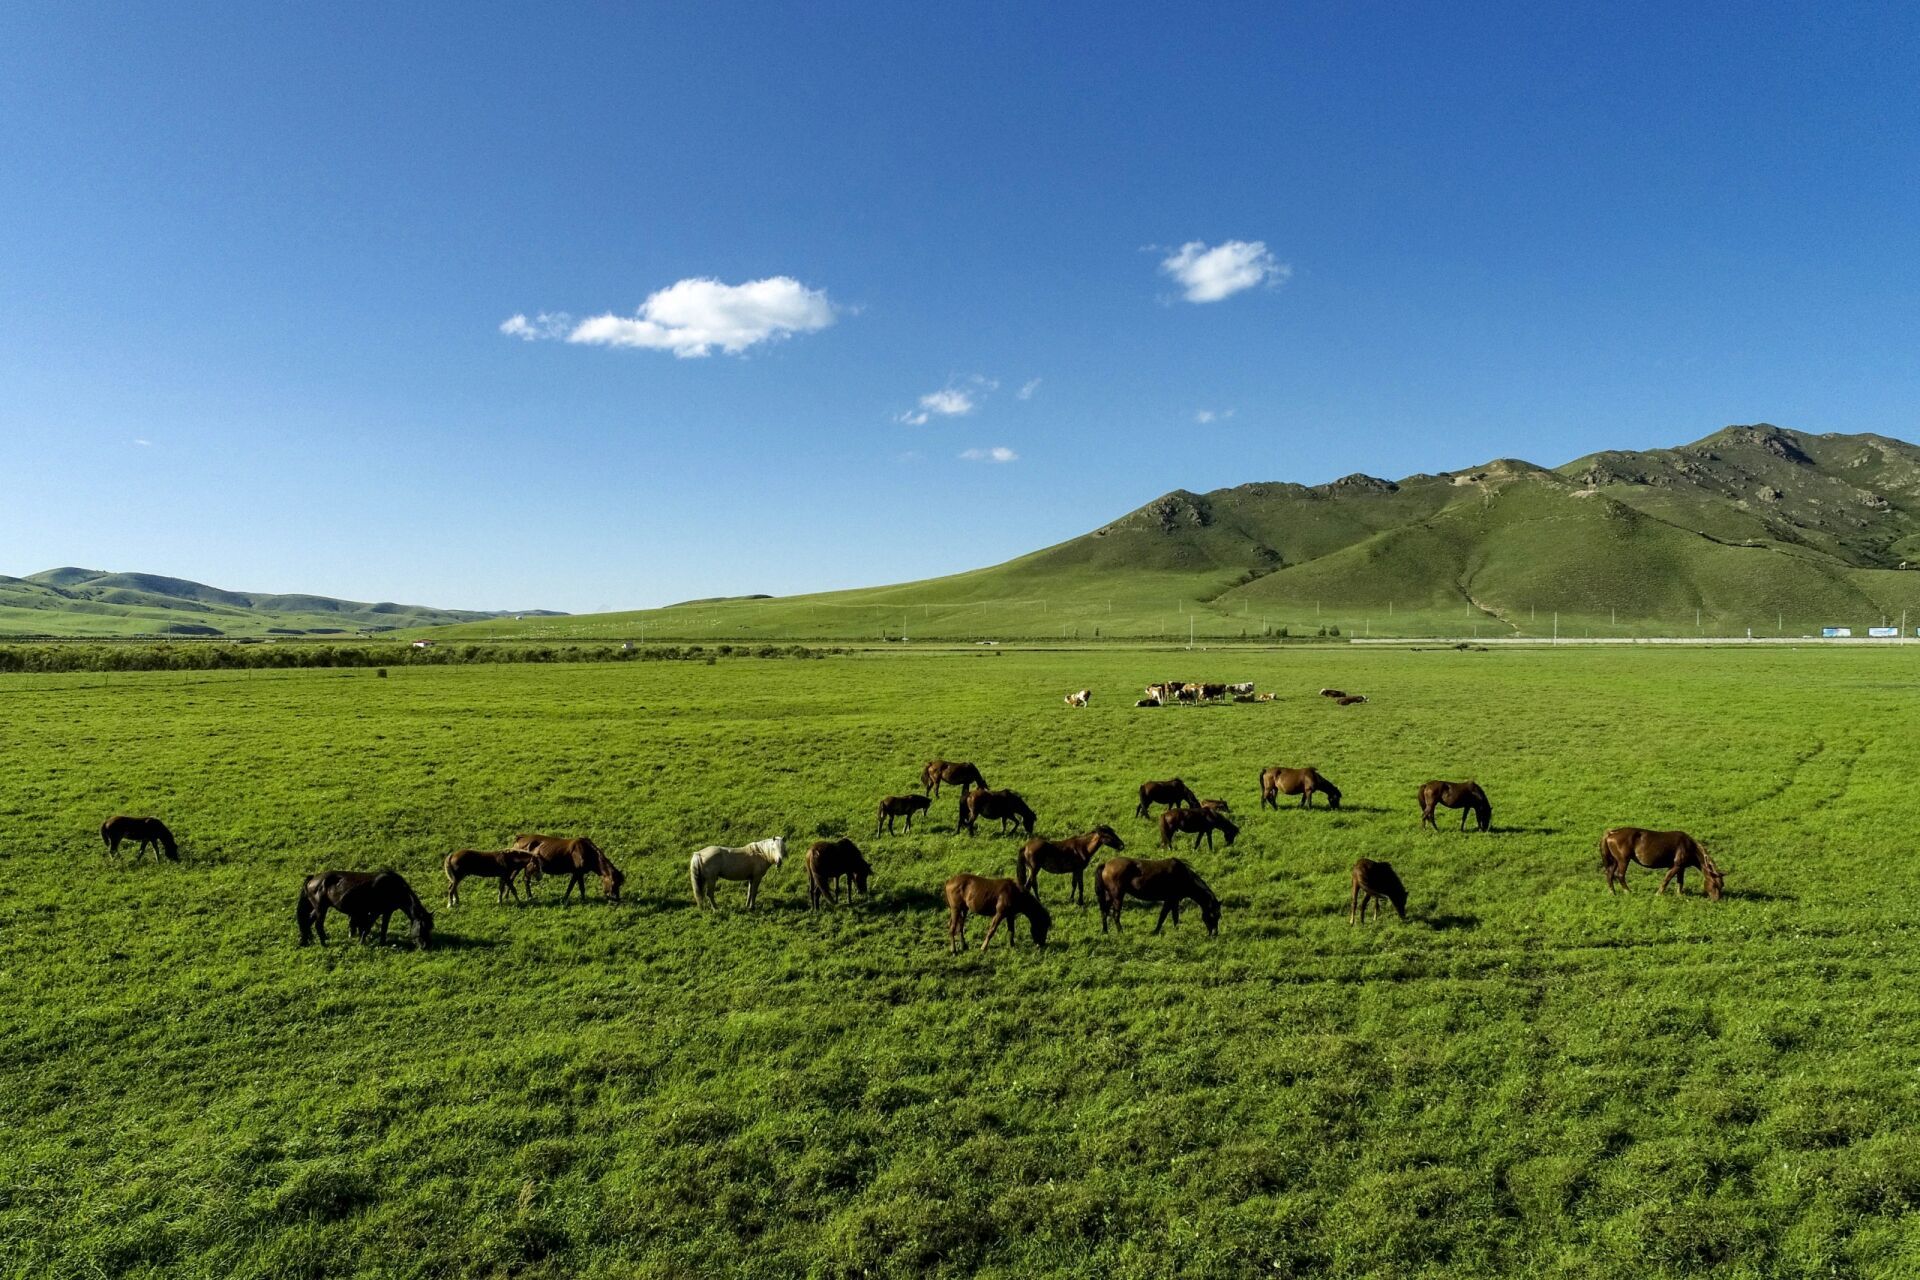 内蒙古之美二:乌兰毛都草原 内蒙古乌兰毛都草原是中国北方最大的草原